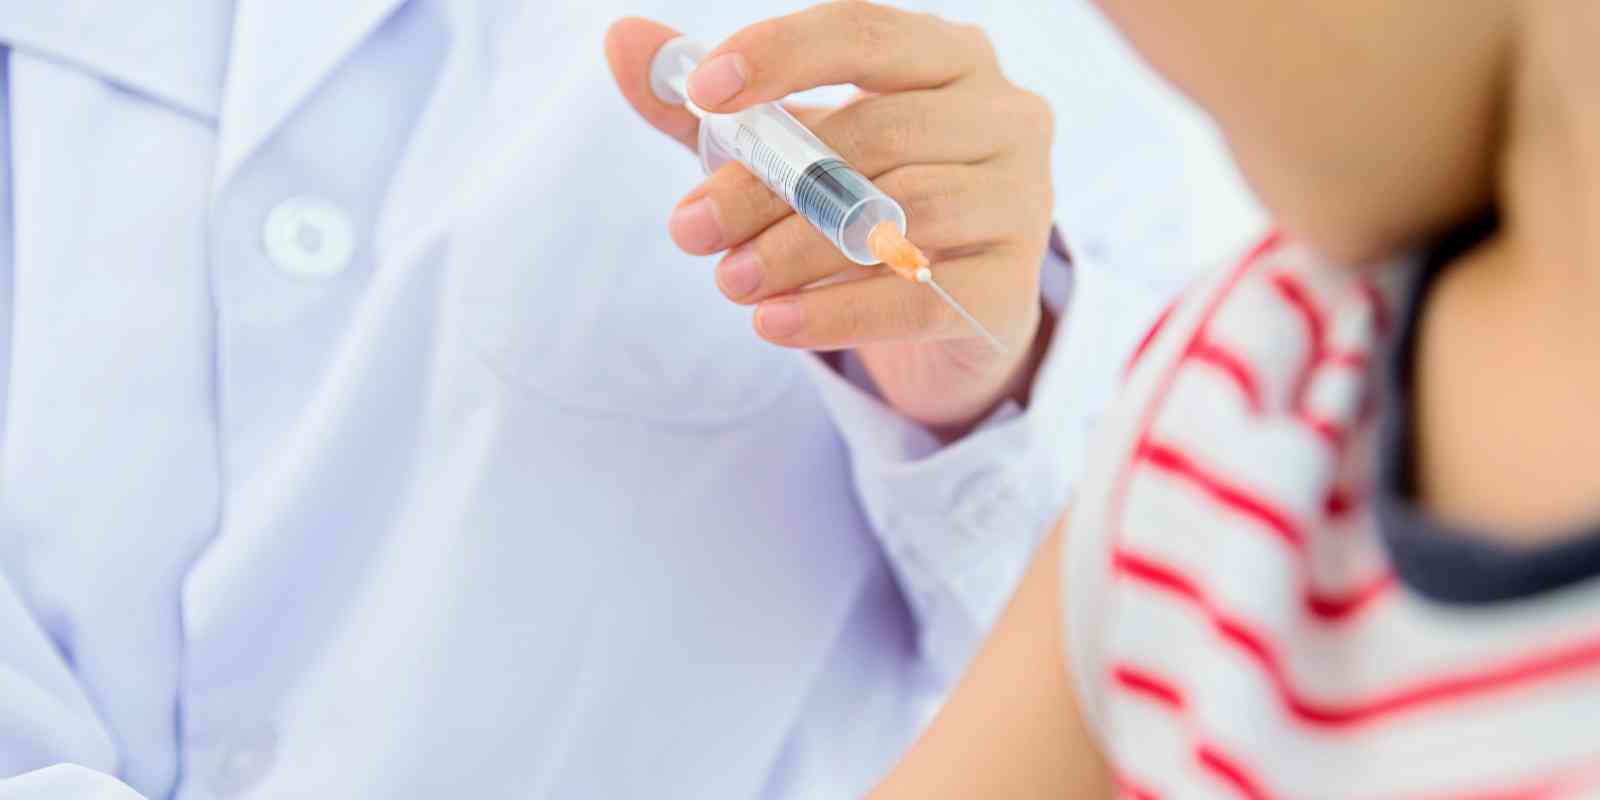 医生建议打五联疫苗是因为它的接种针次少